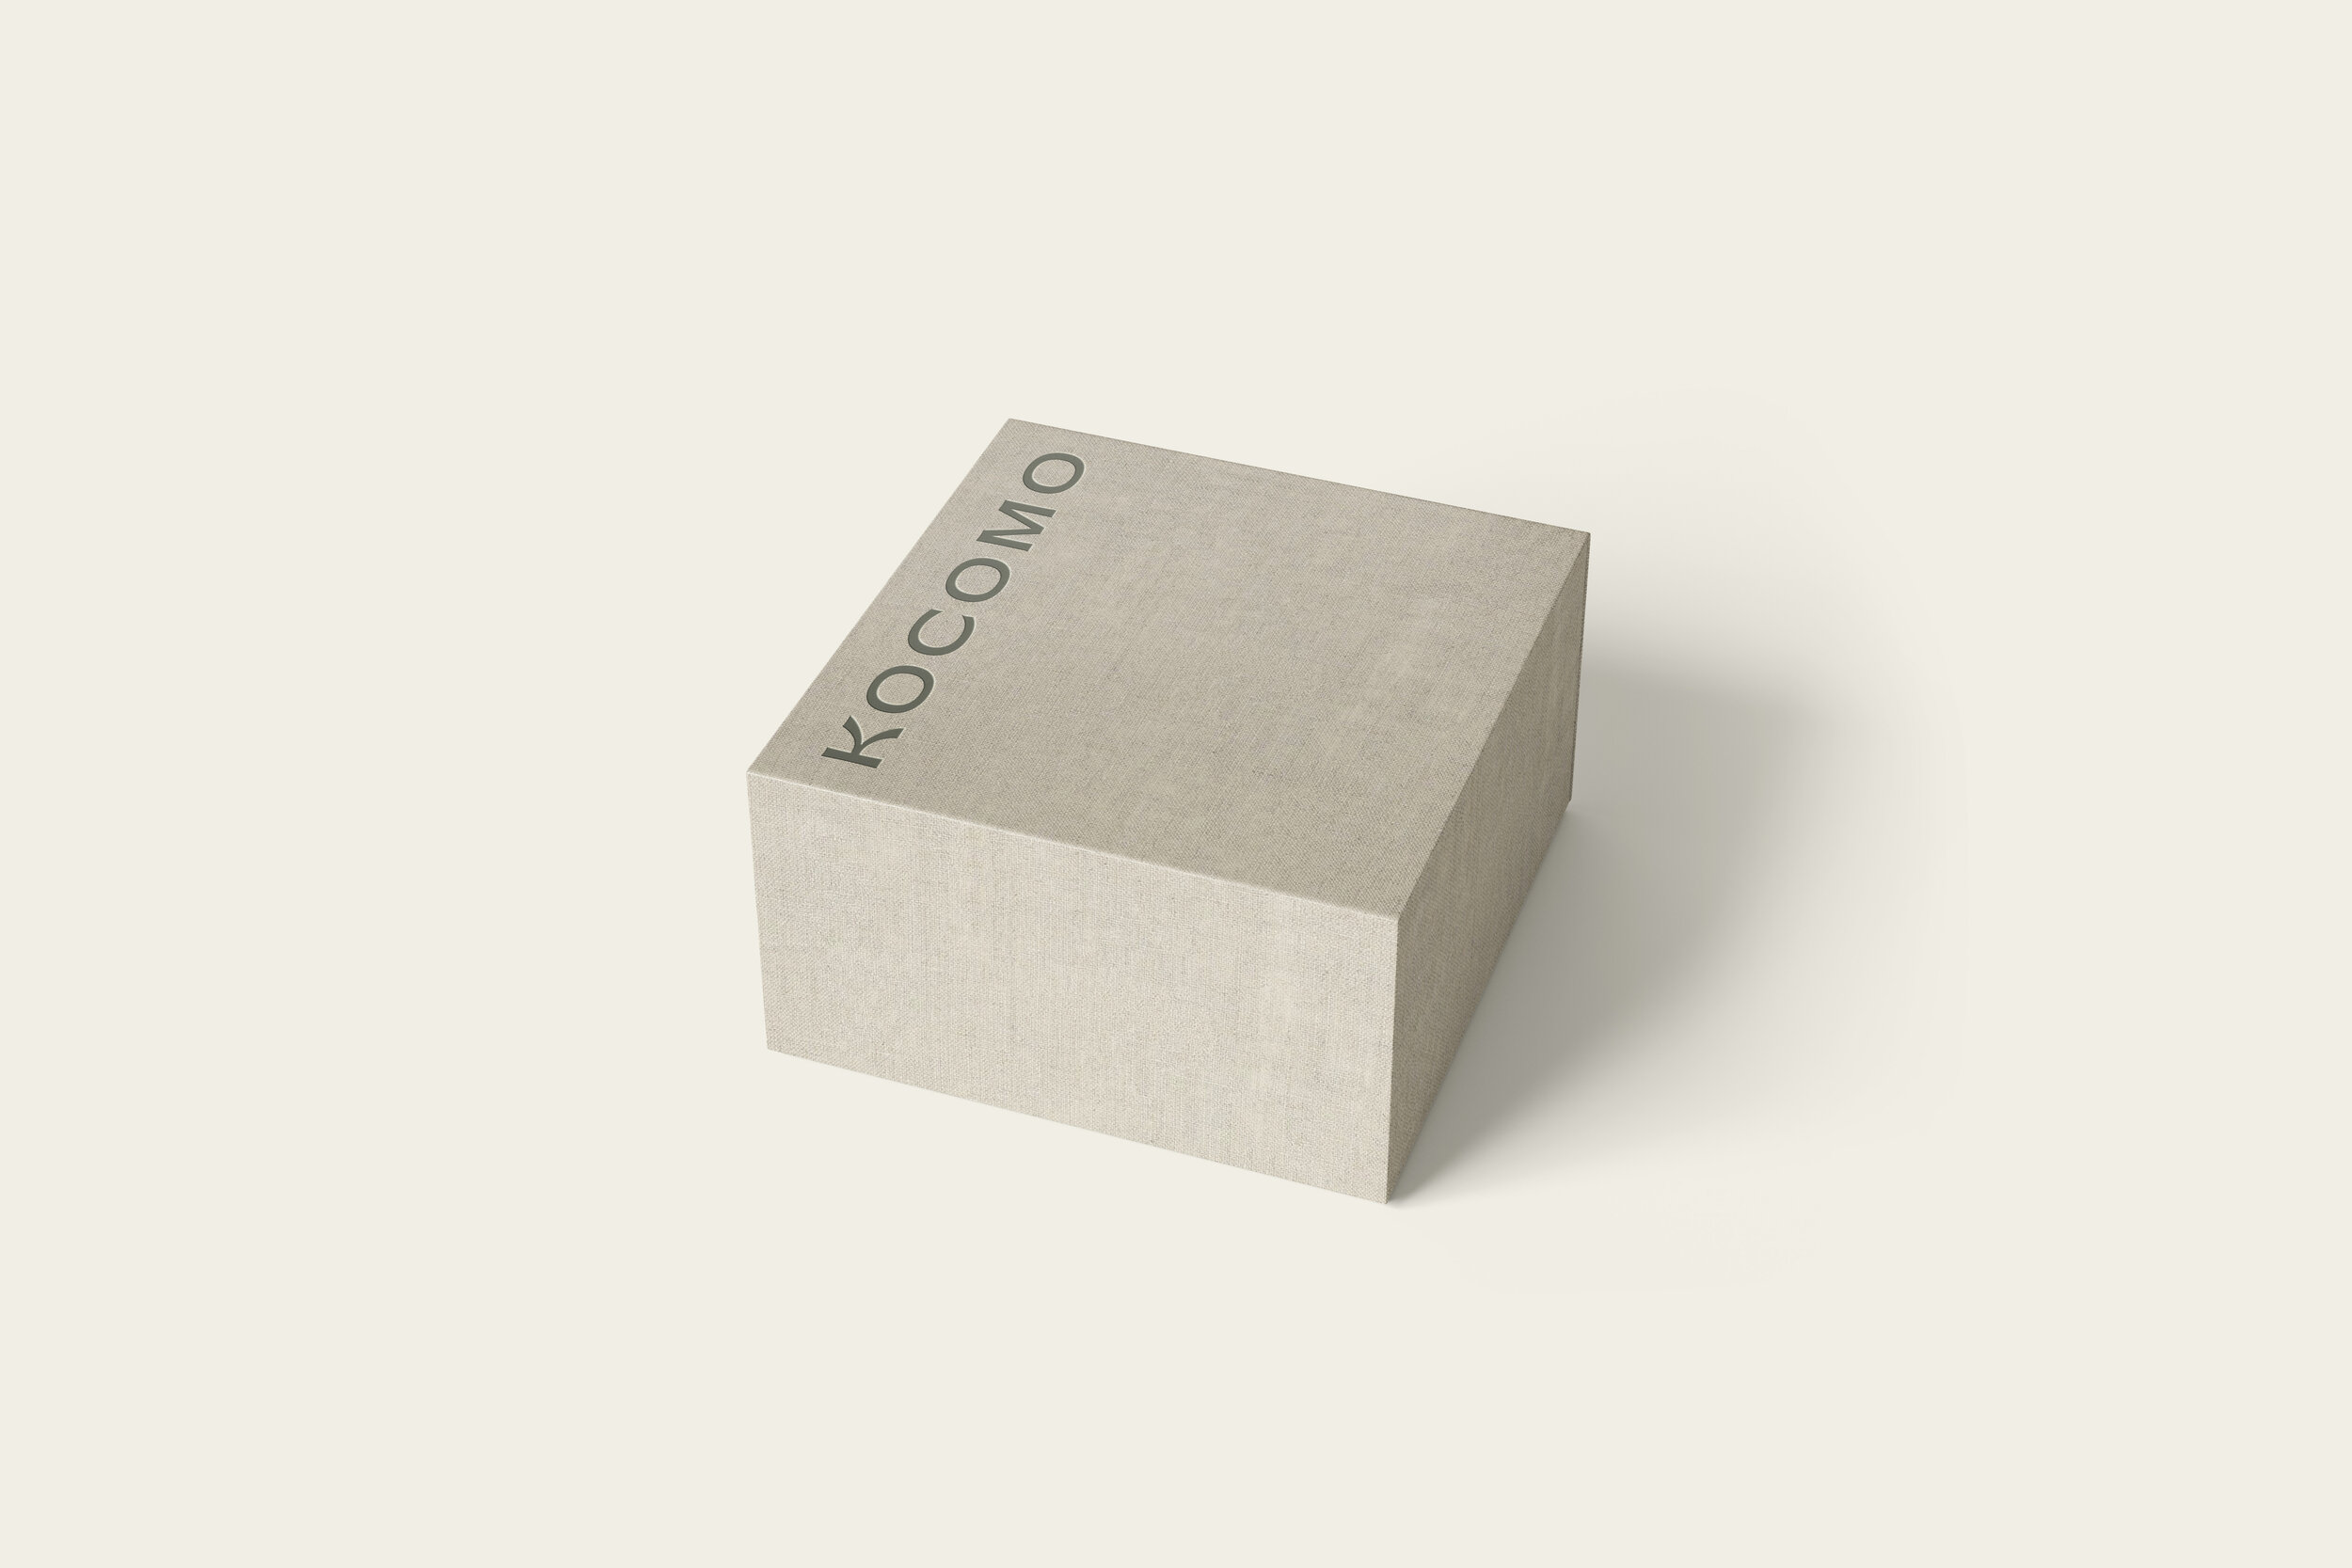 Kocomo_gift-box.jpg